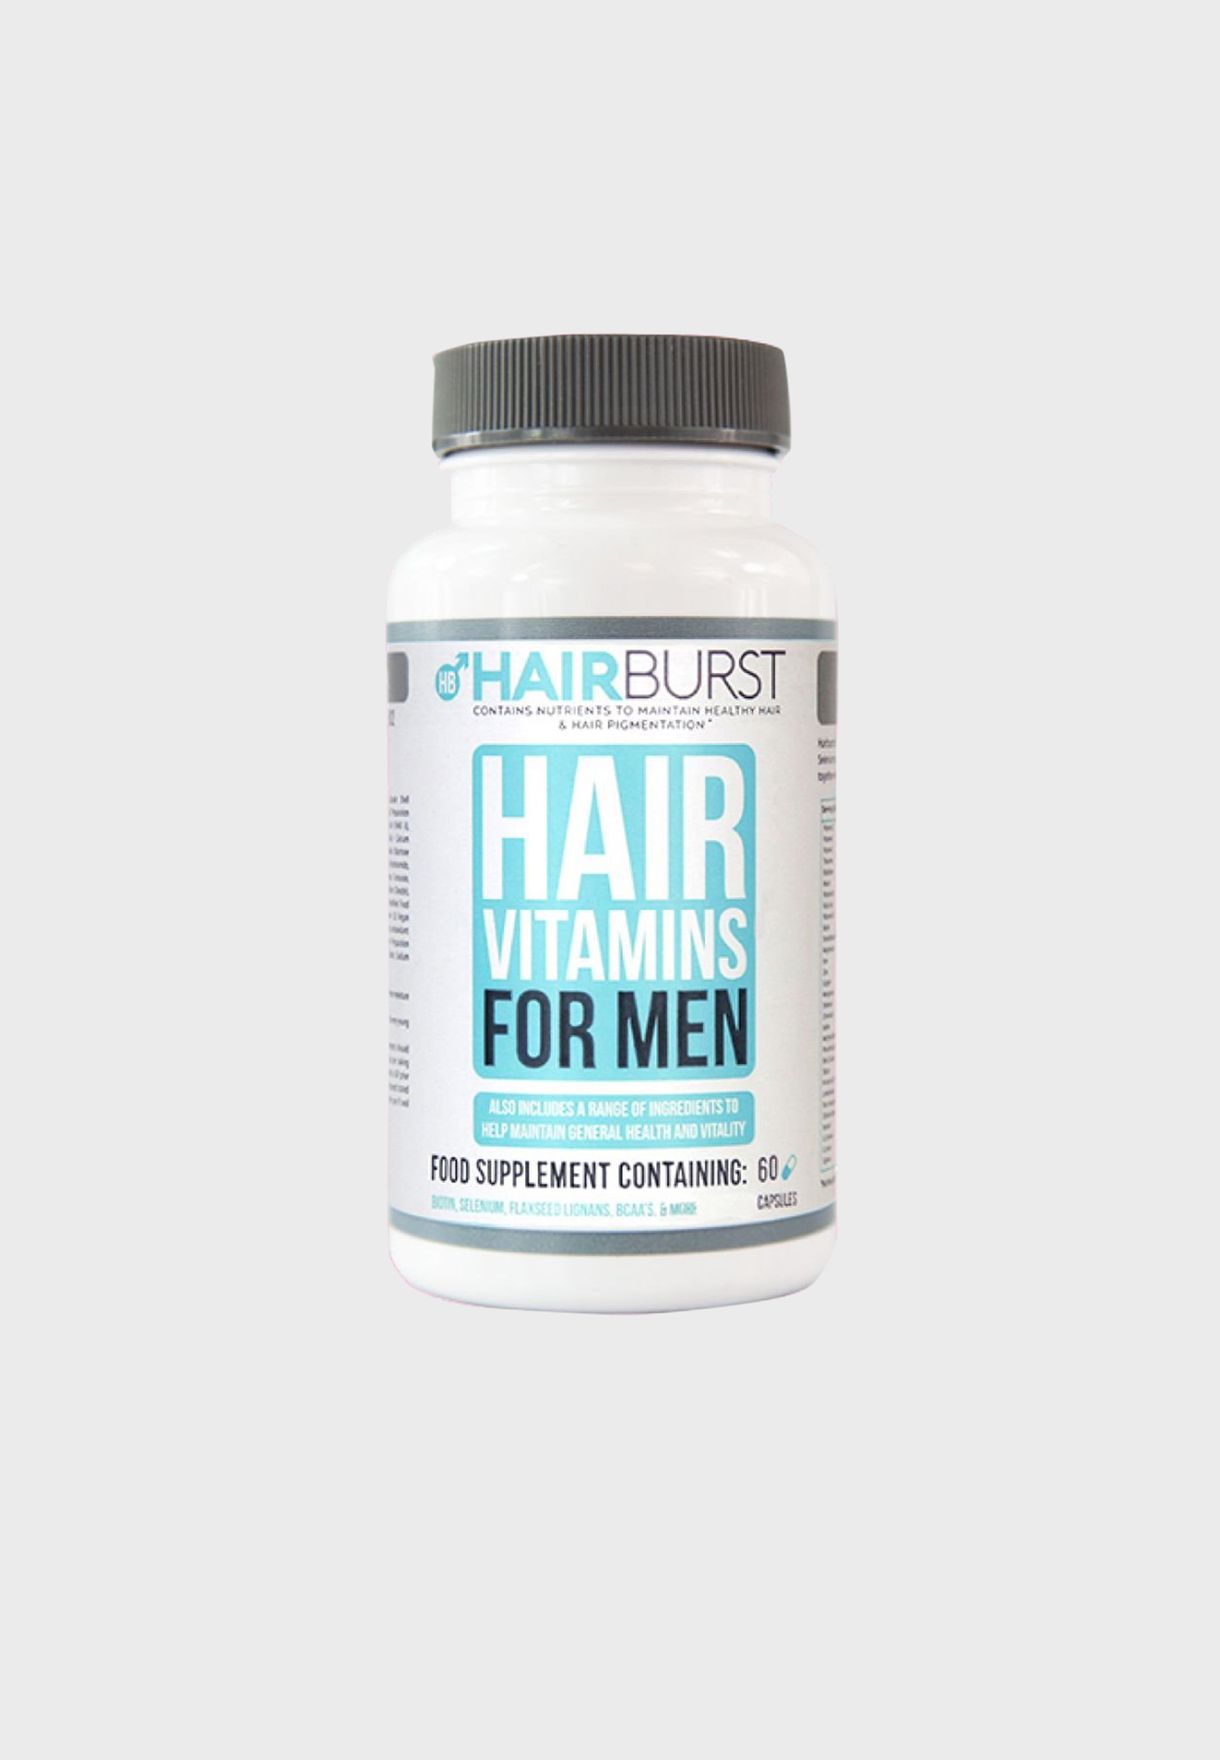 Buy Hairburst clear HAIBURST MAN HAIR VITAMINS for Women in Dubai, Abu Dhabi